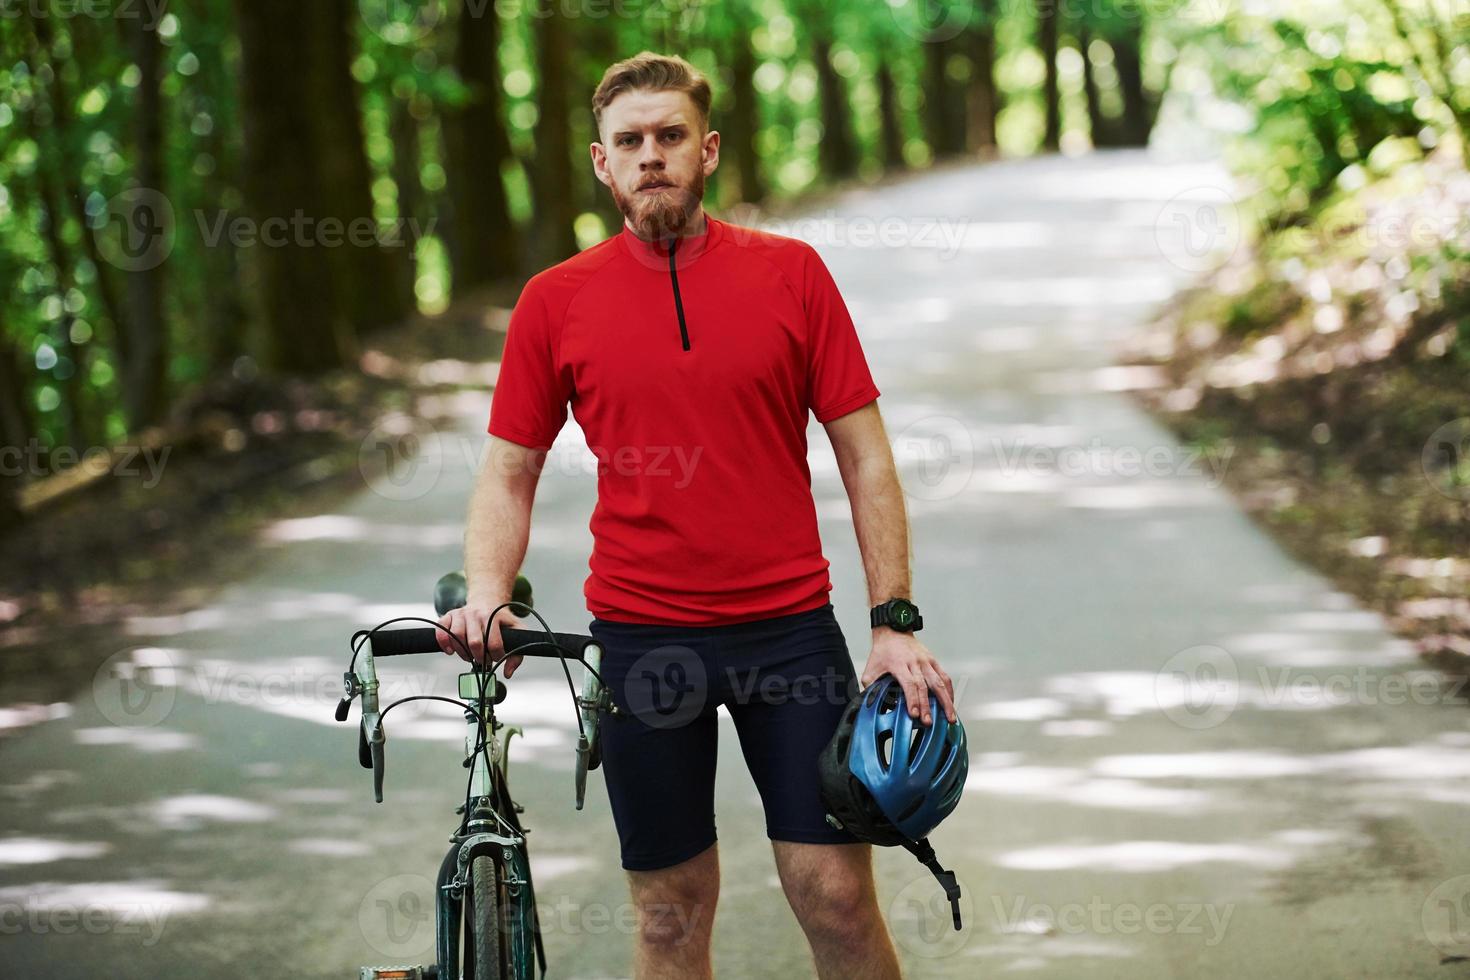 sosteniendo el casco de seguridad en la mano. ciclista en bicicleta está en la carretera asfaltada en el bosque en un día soleado foto